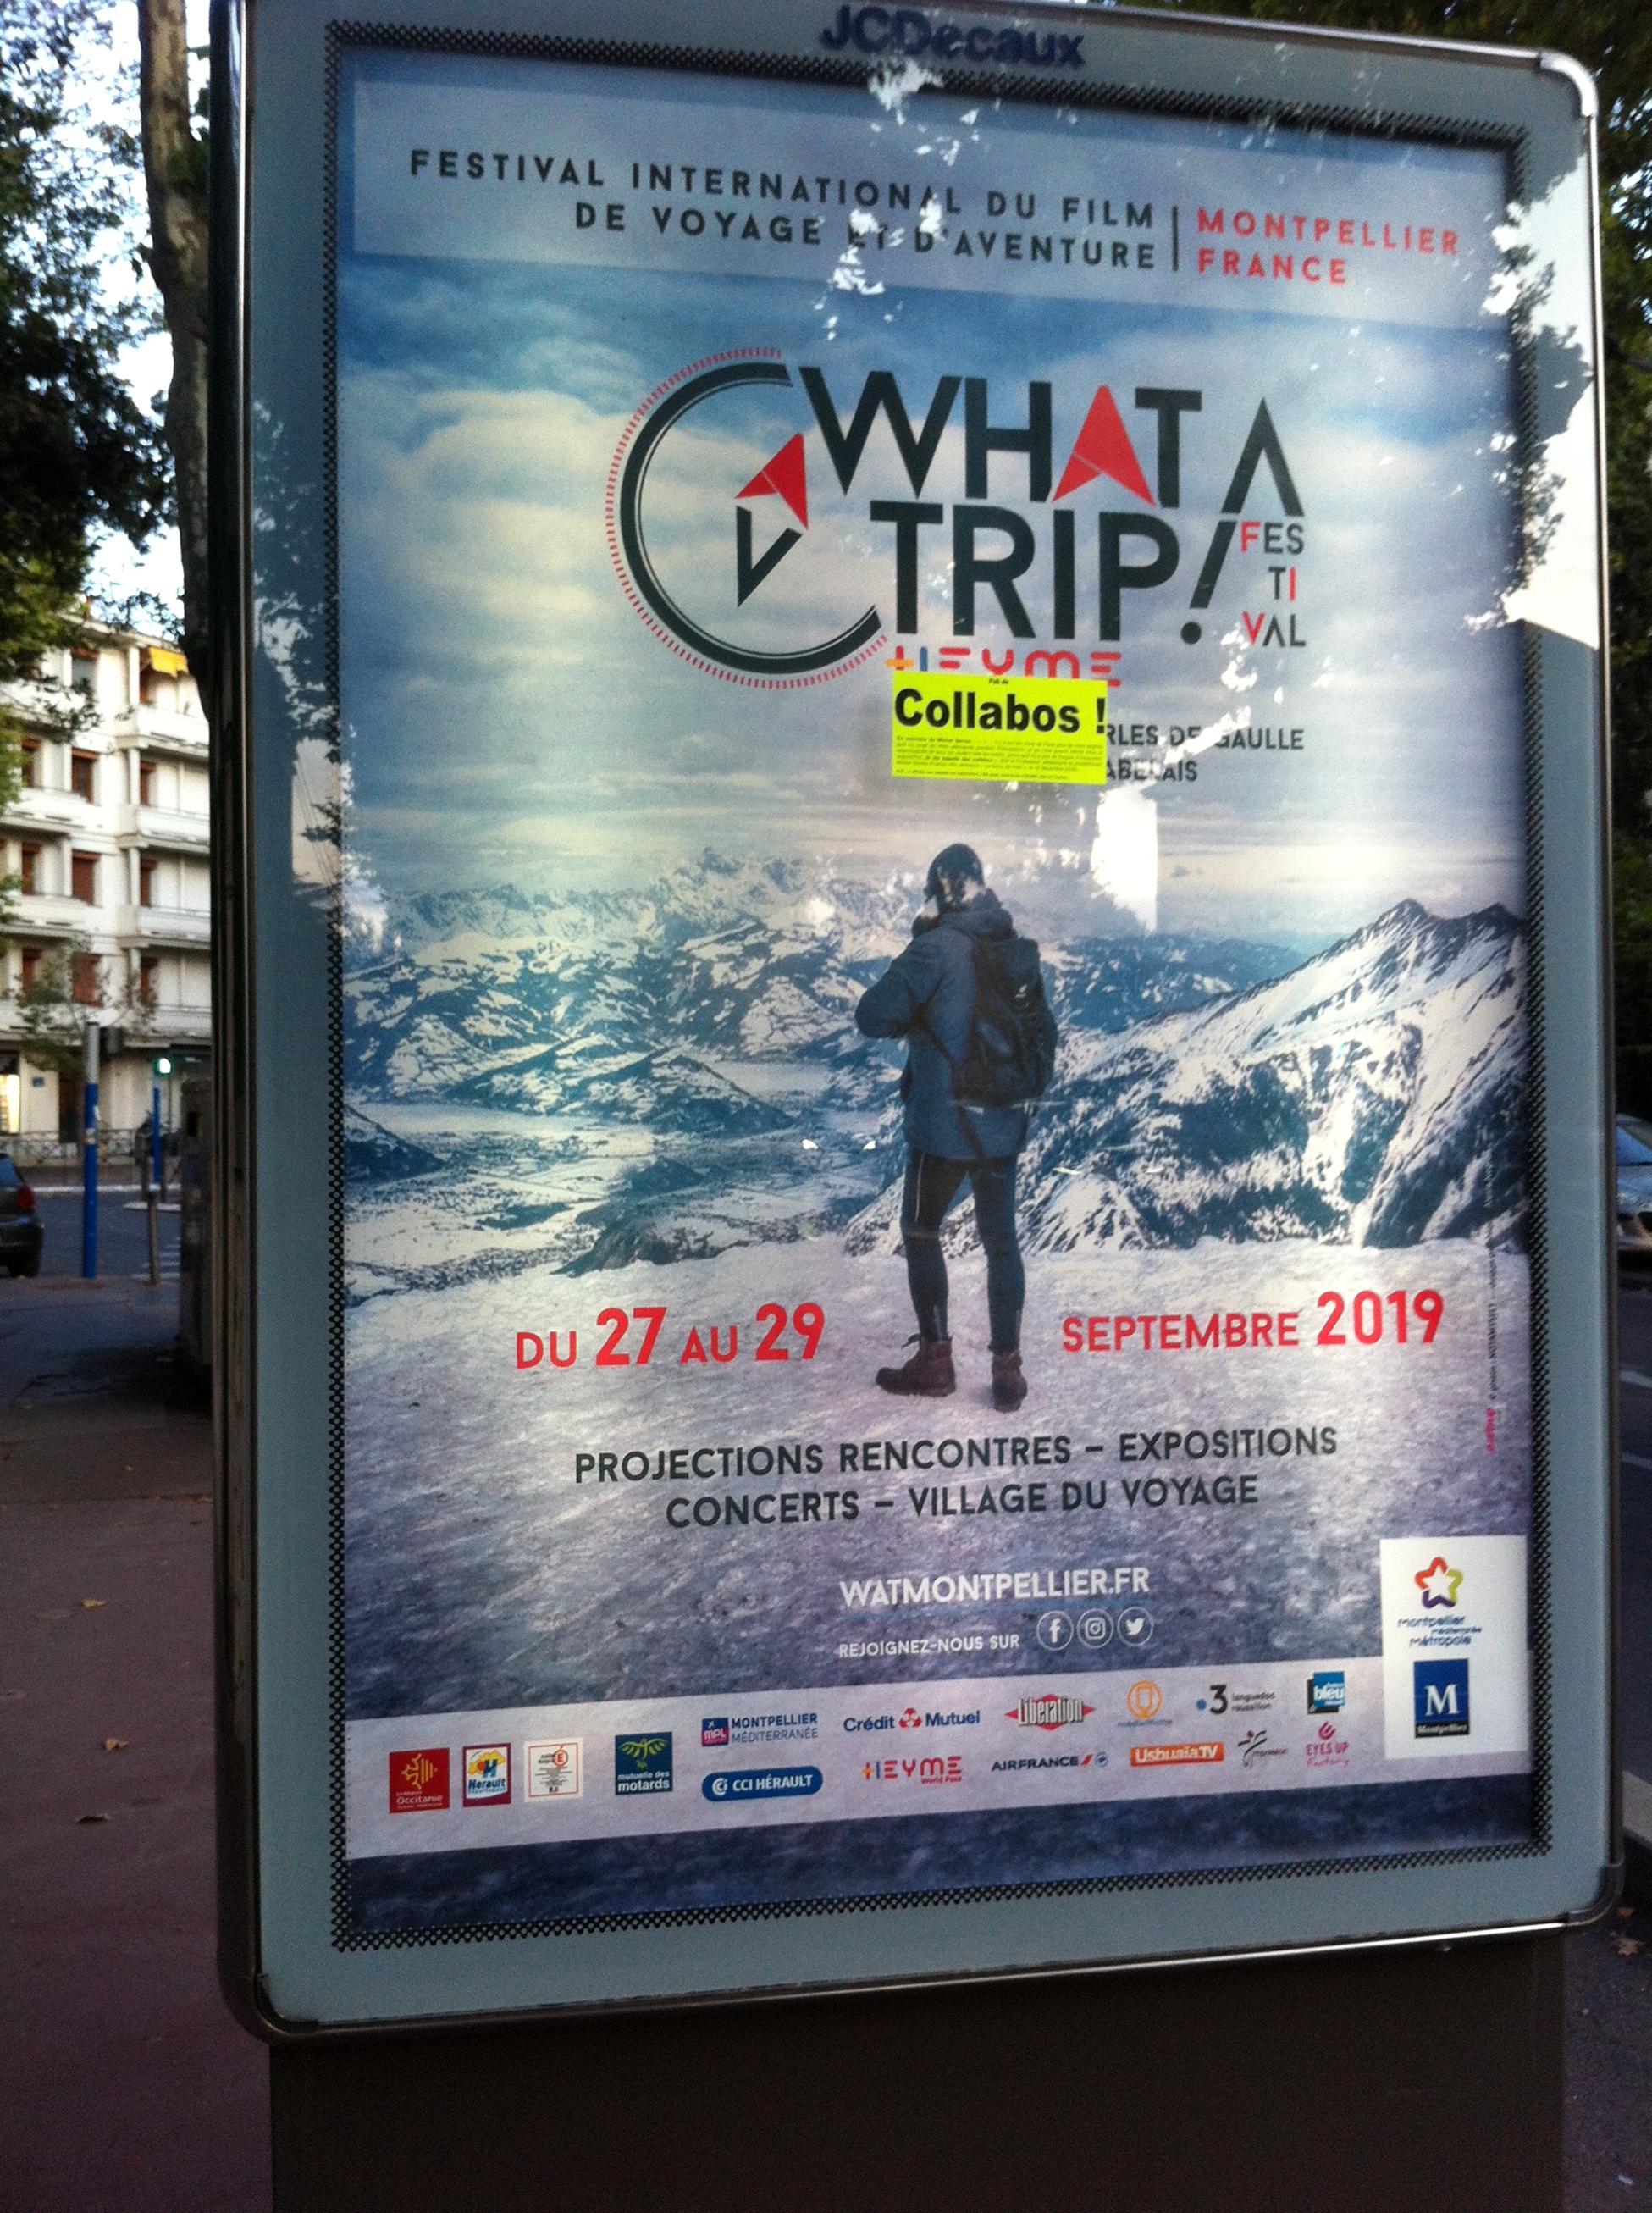 What-a-trip, Festival international du film de voyage et d'aventure